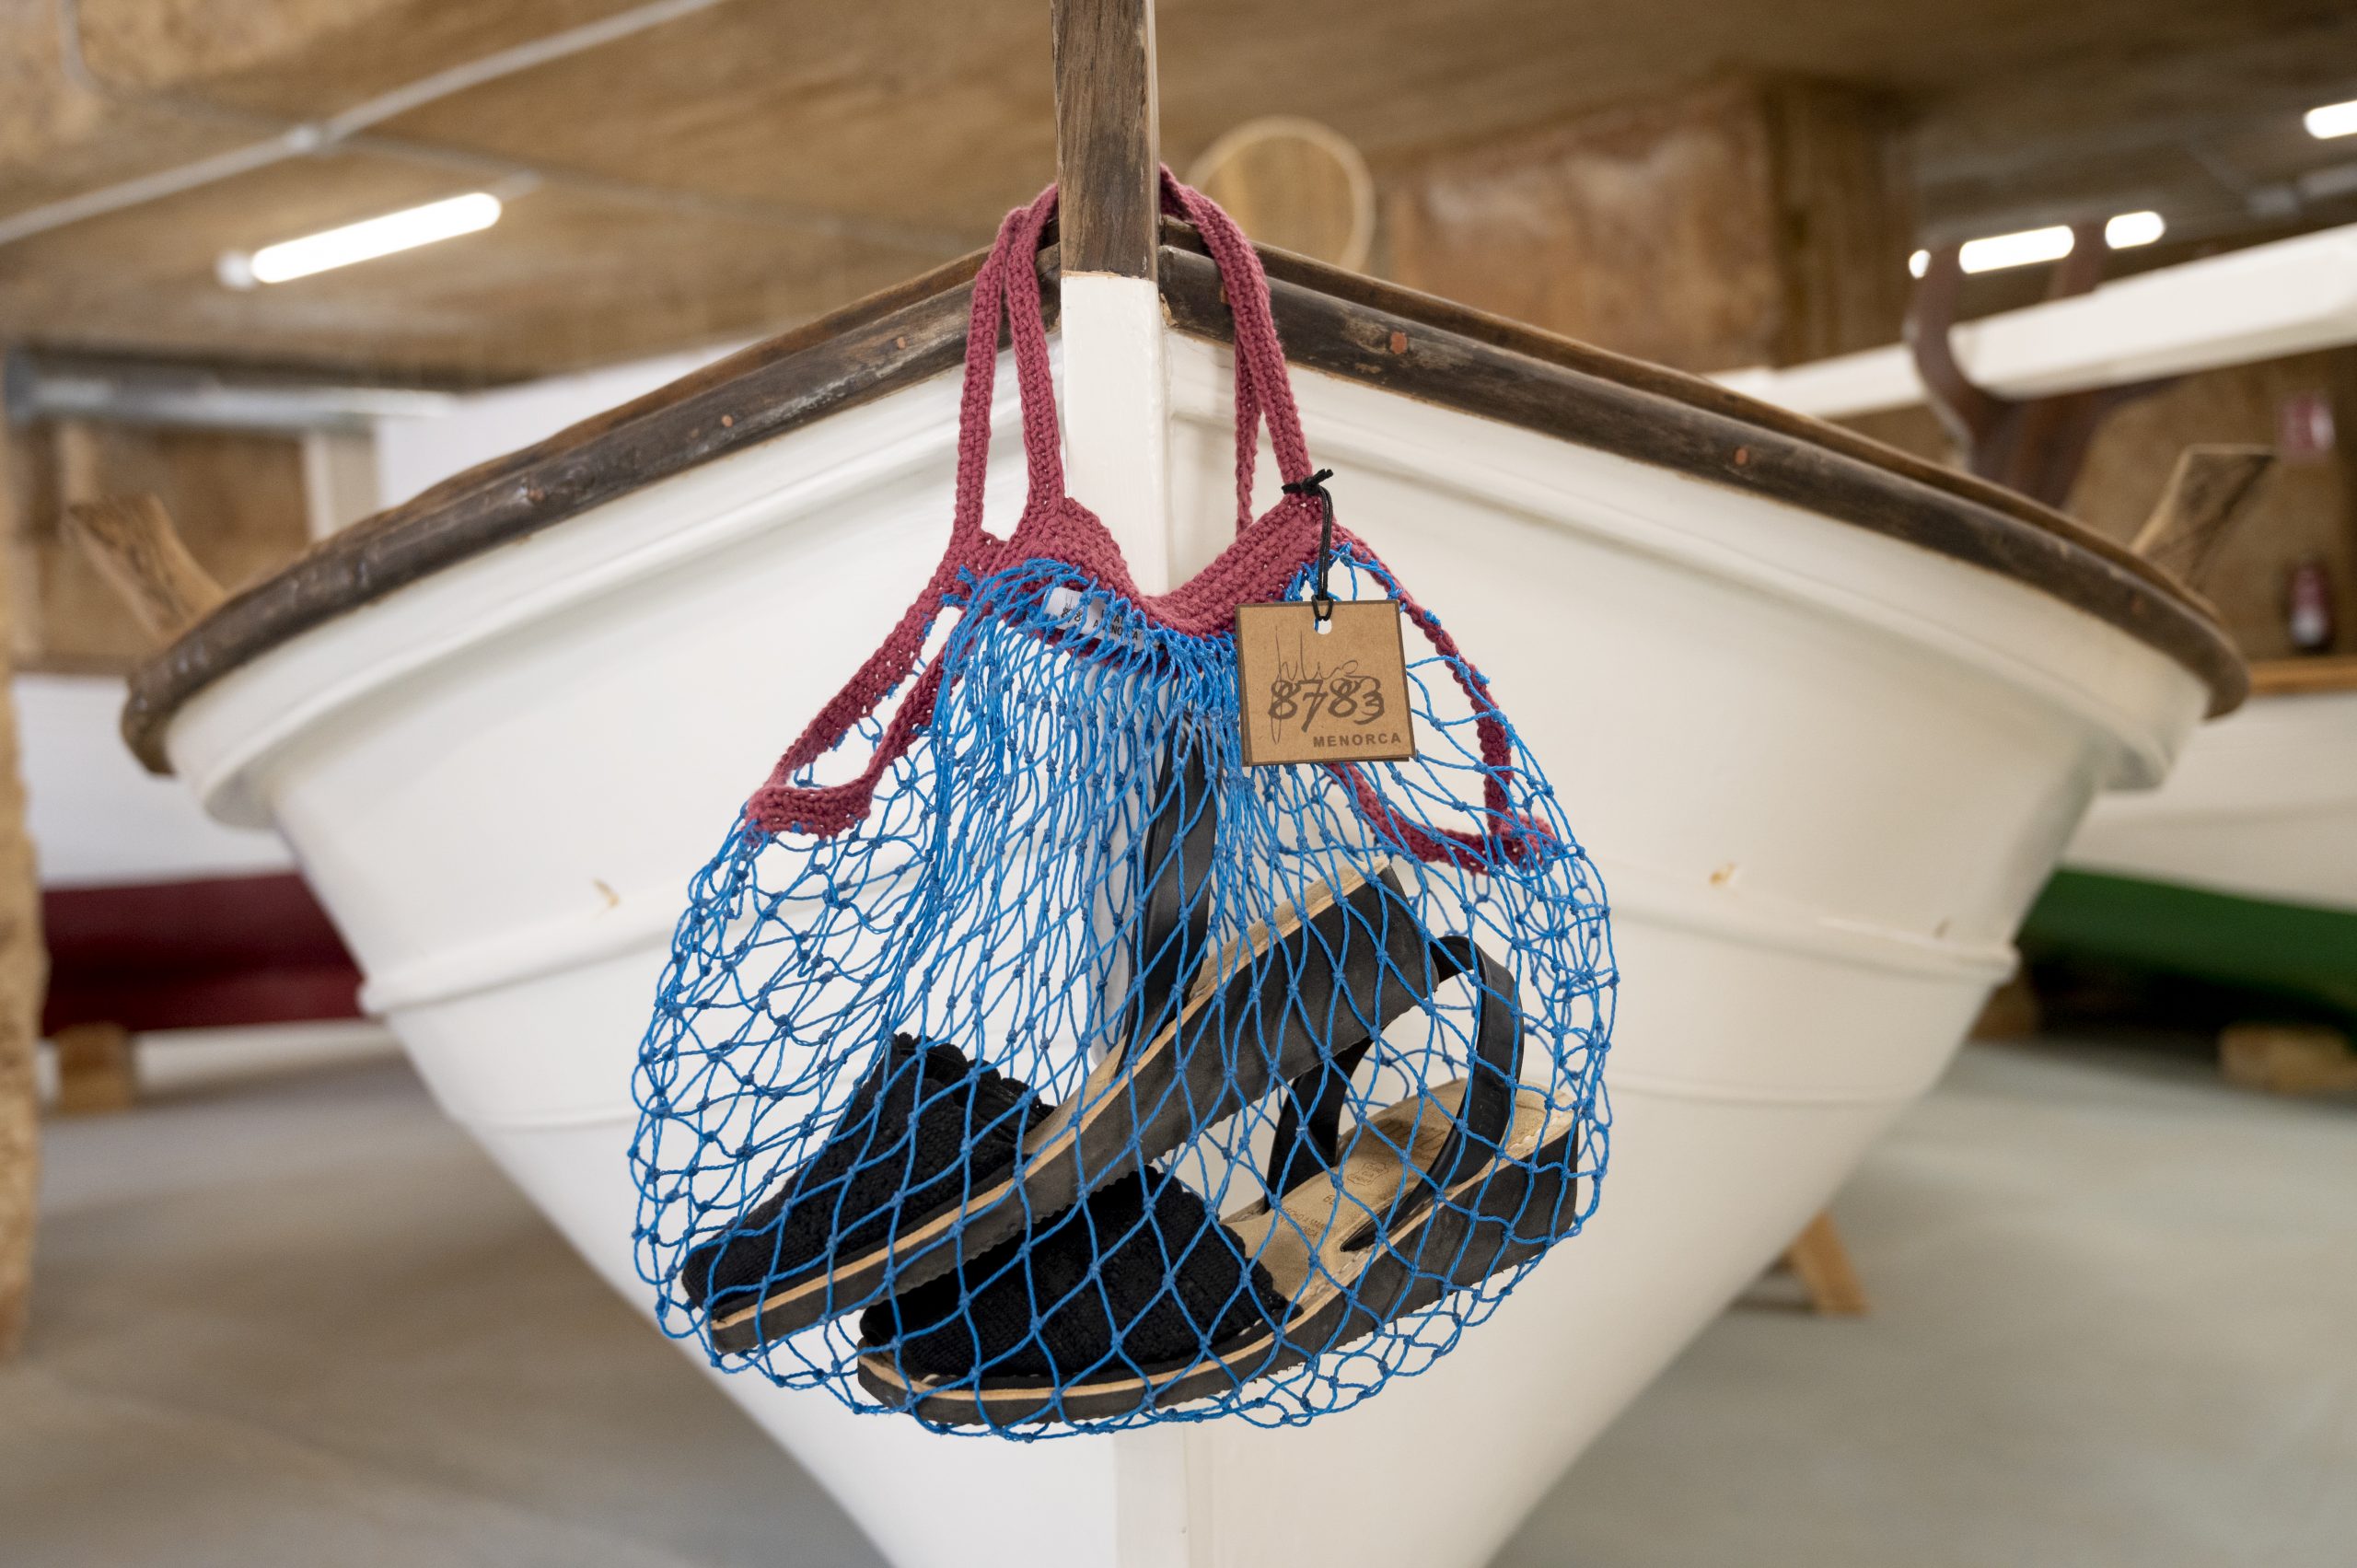 Menorca recicla les xarxes dels pescadors mitjançant l'artesania